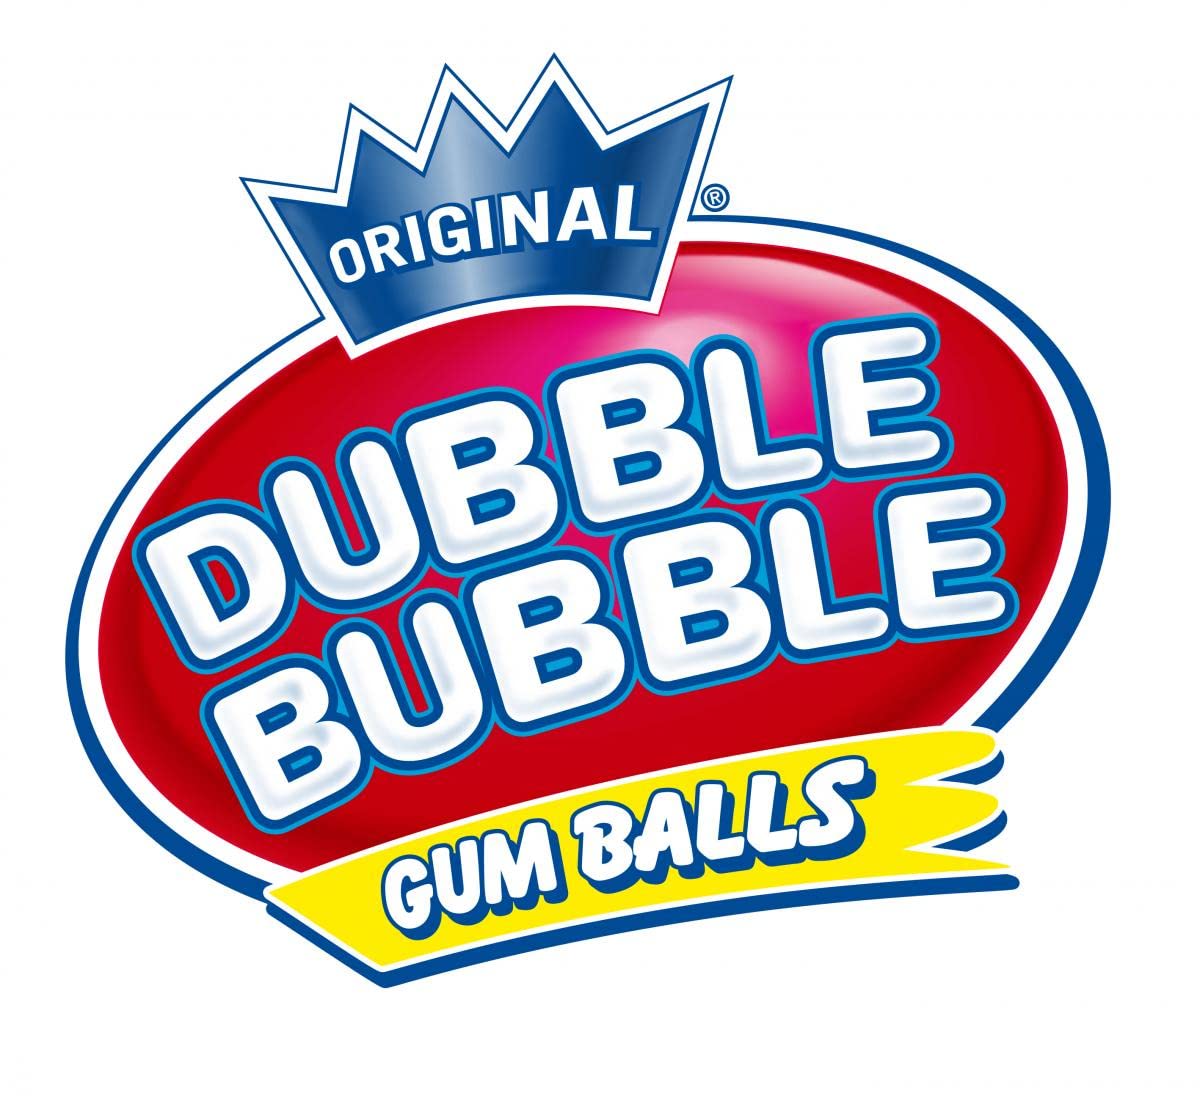 Dubble Bubble - My American Shop